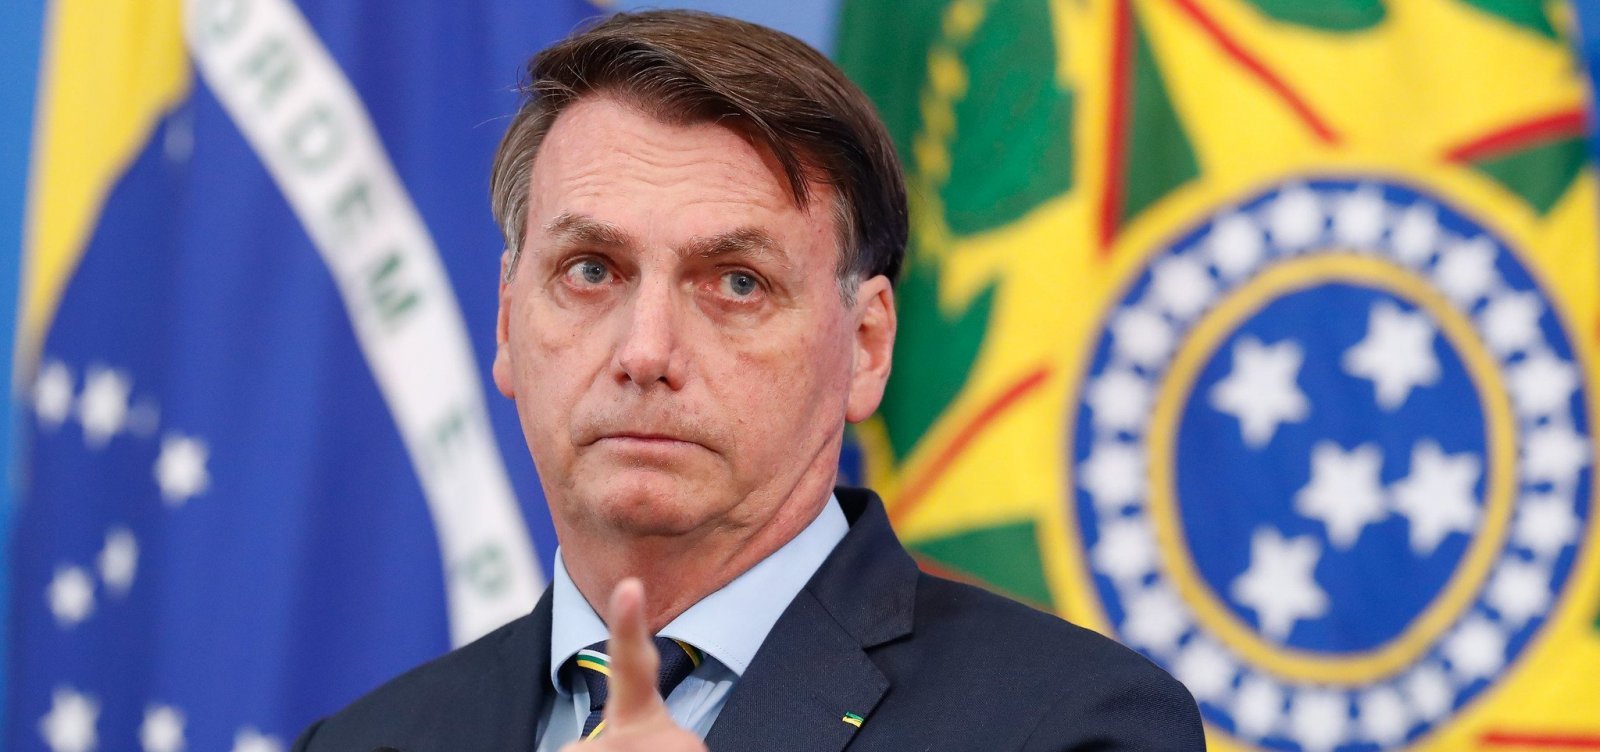 Com placar de 5 a 2, TSE condena Bolsonaro e o torna inelegível por oito anos